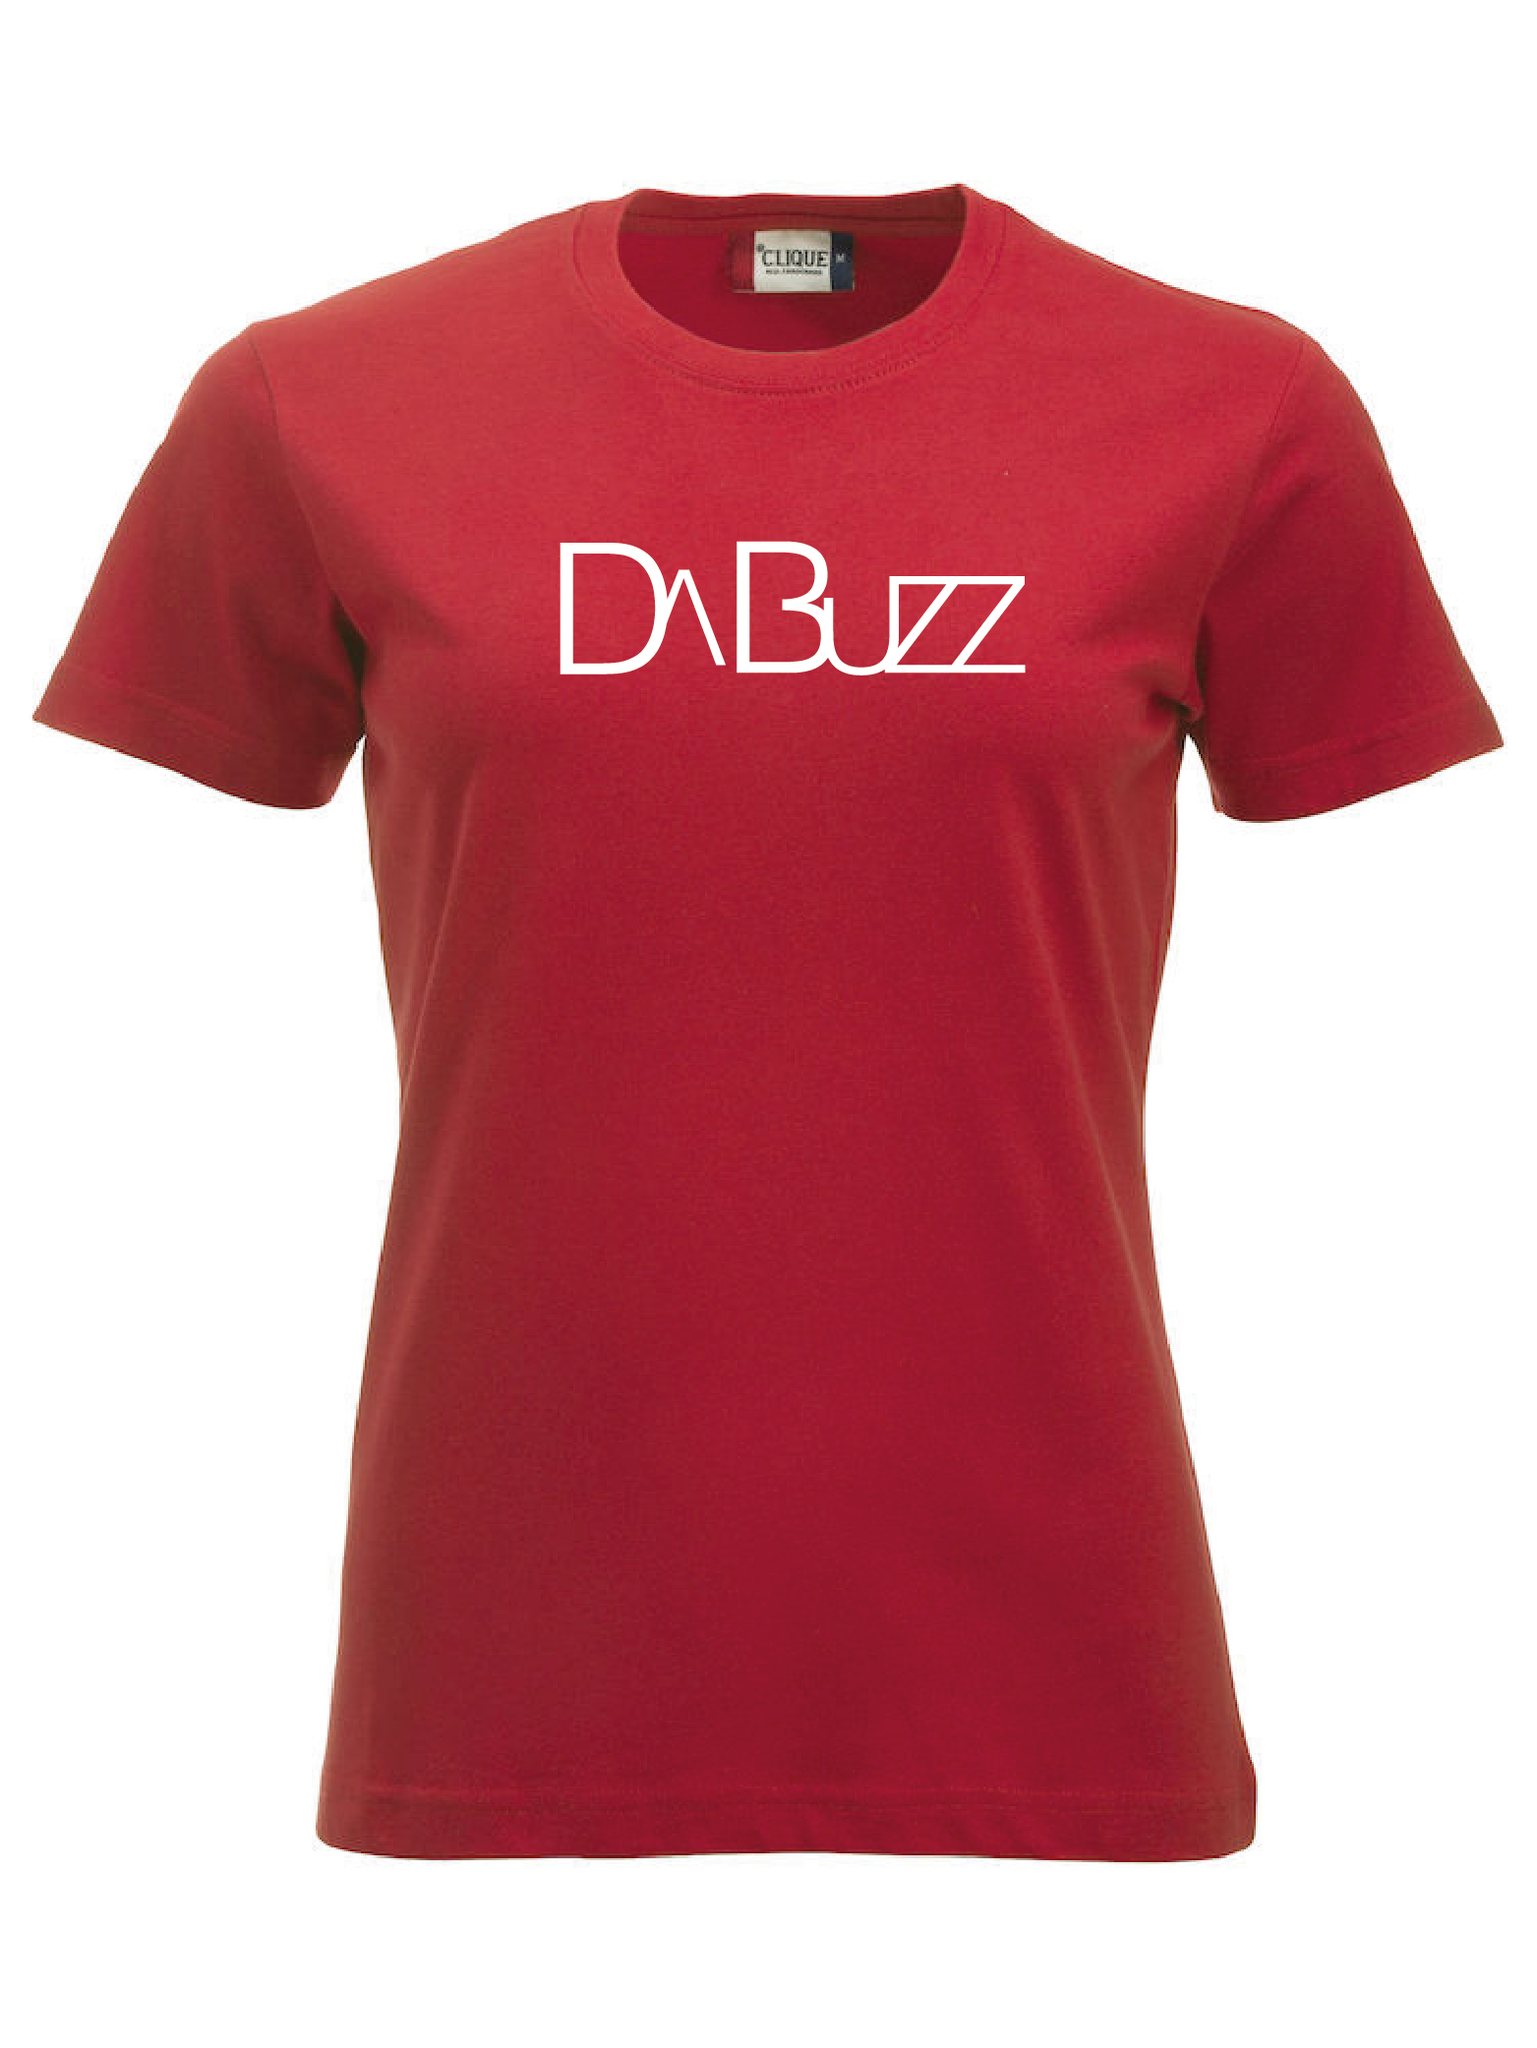 Röd Dam T-shirt "DaBuzz"